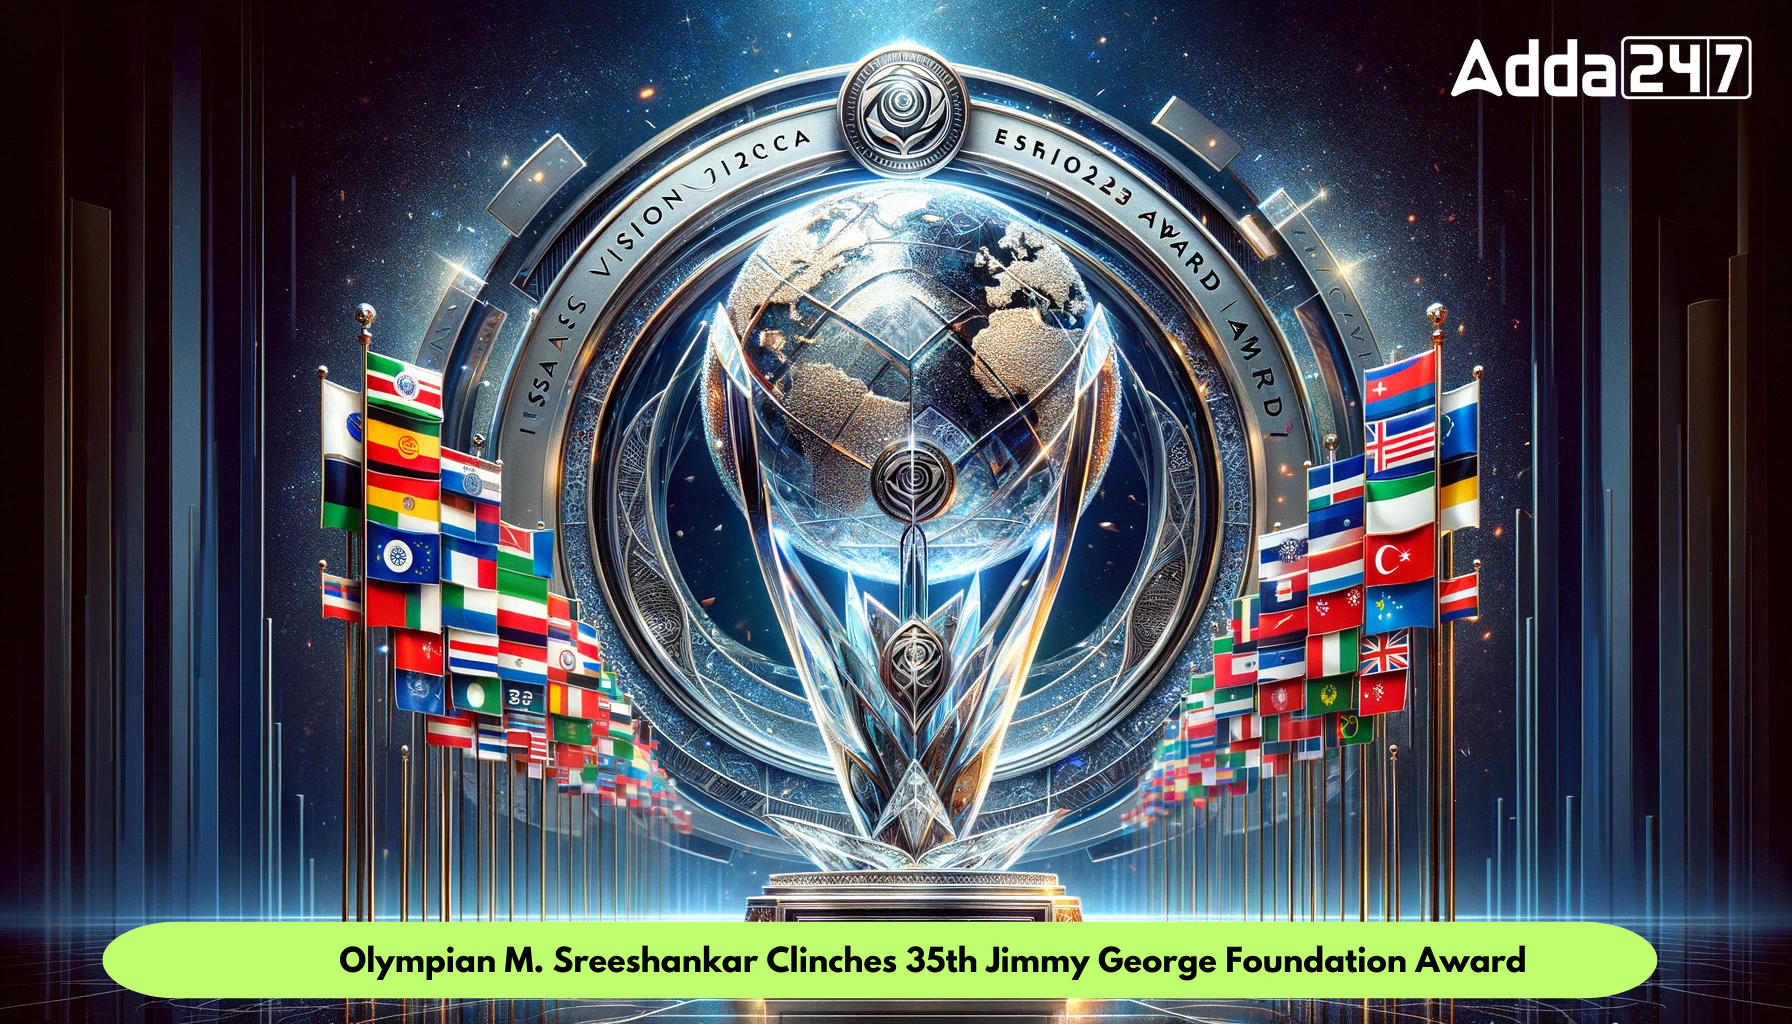 Olympian M. Sreeshankar Clinches 35th Jimmy George Foundation Award